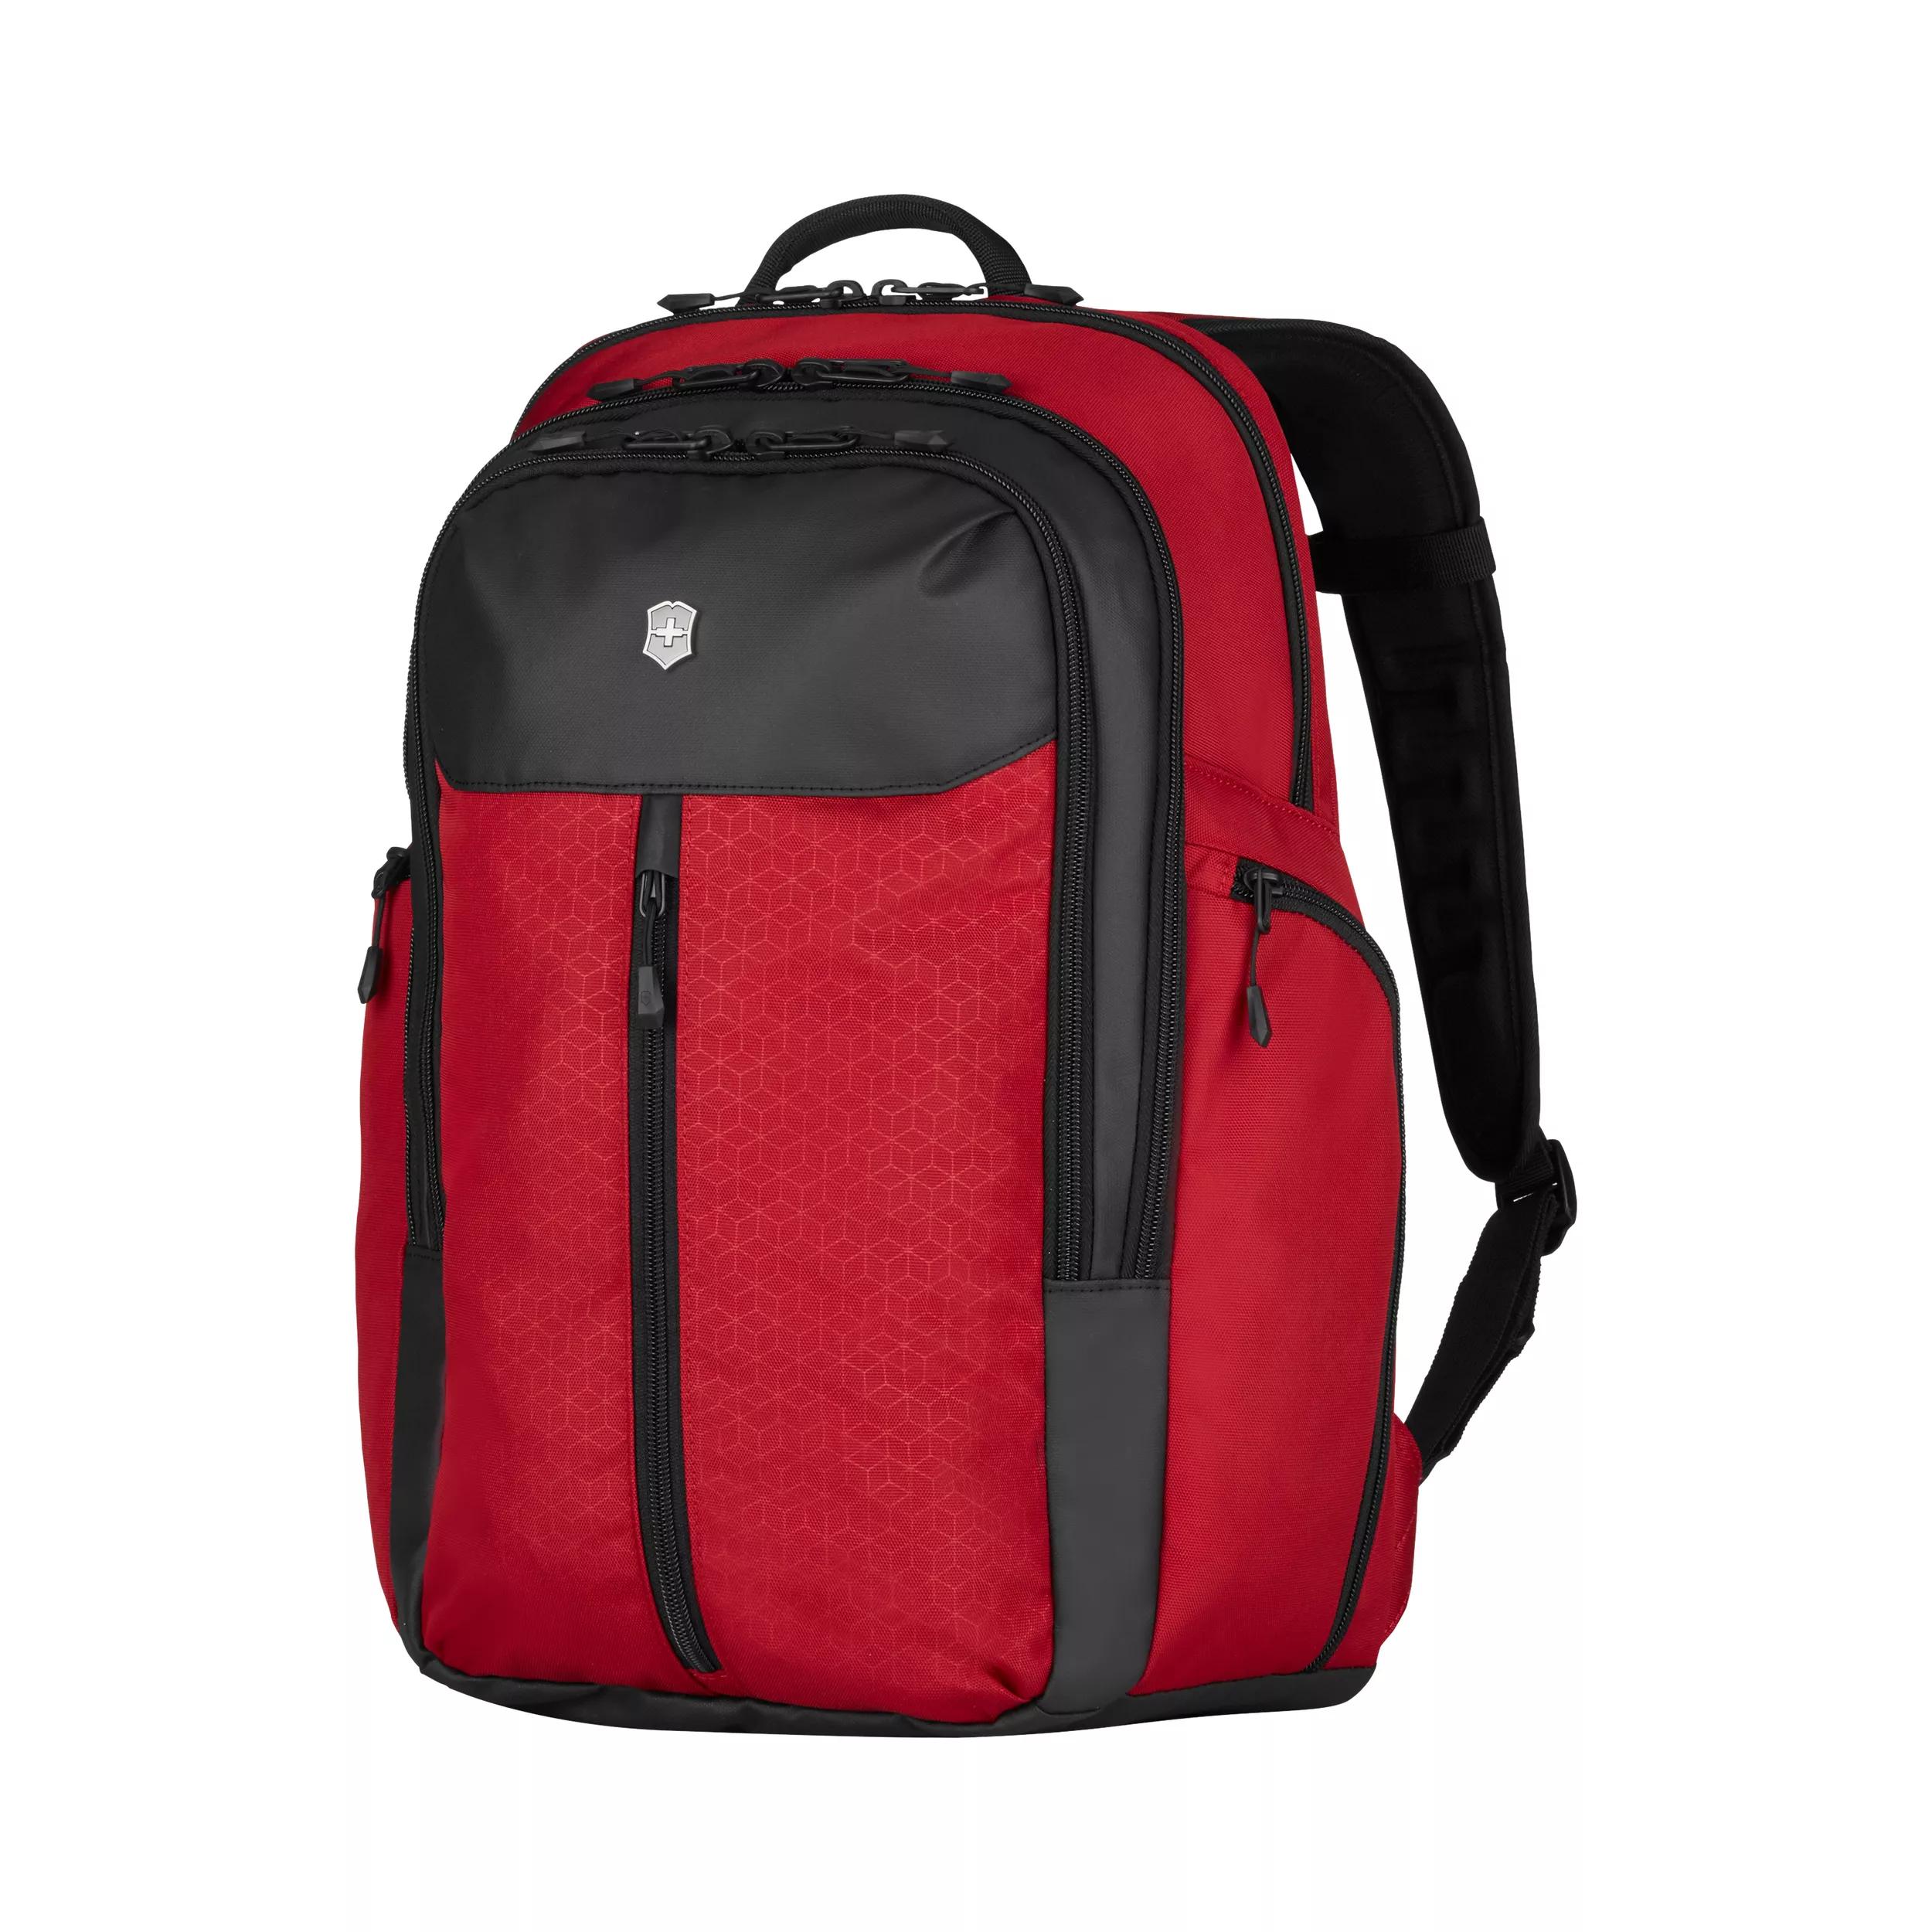 Victorinox Altmont Original Vertical-Zip Laptop Backpack in red - 606732